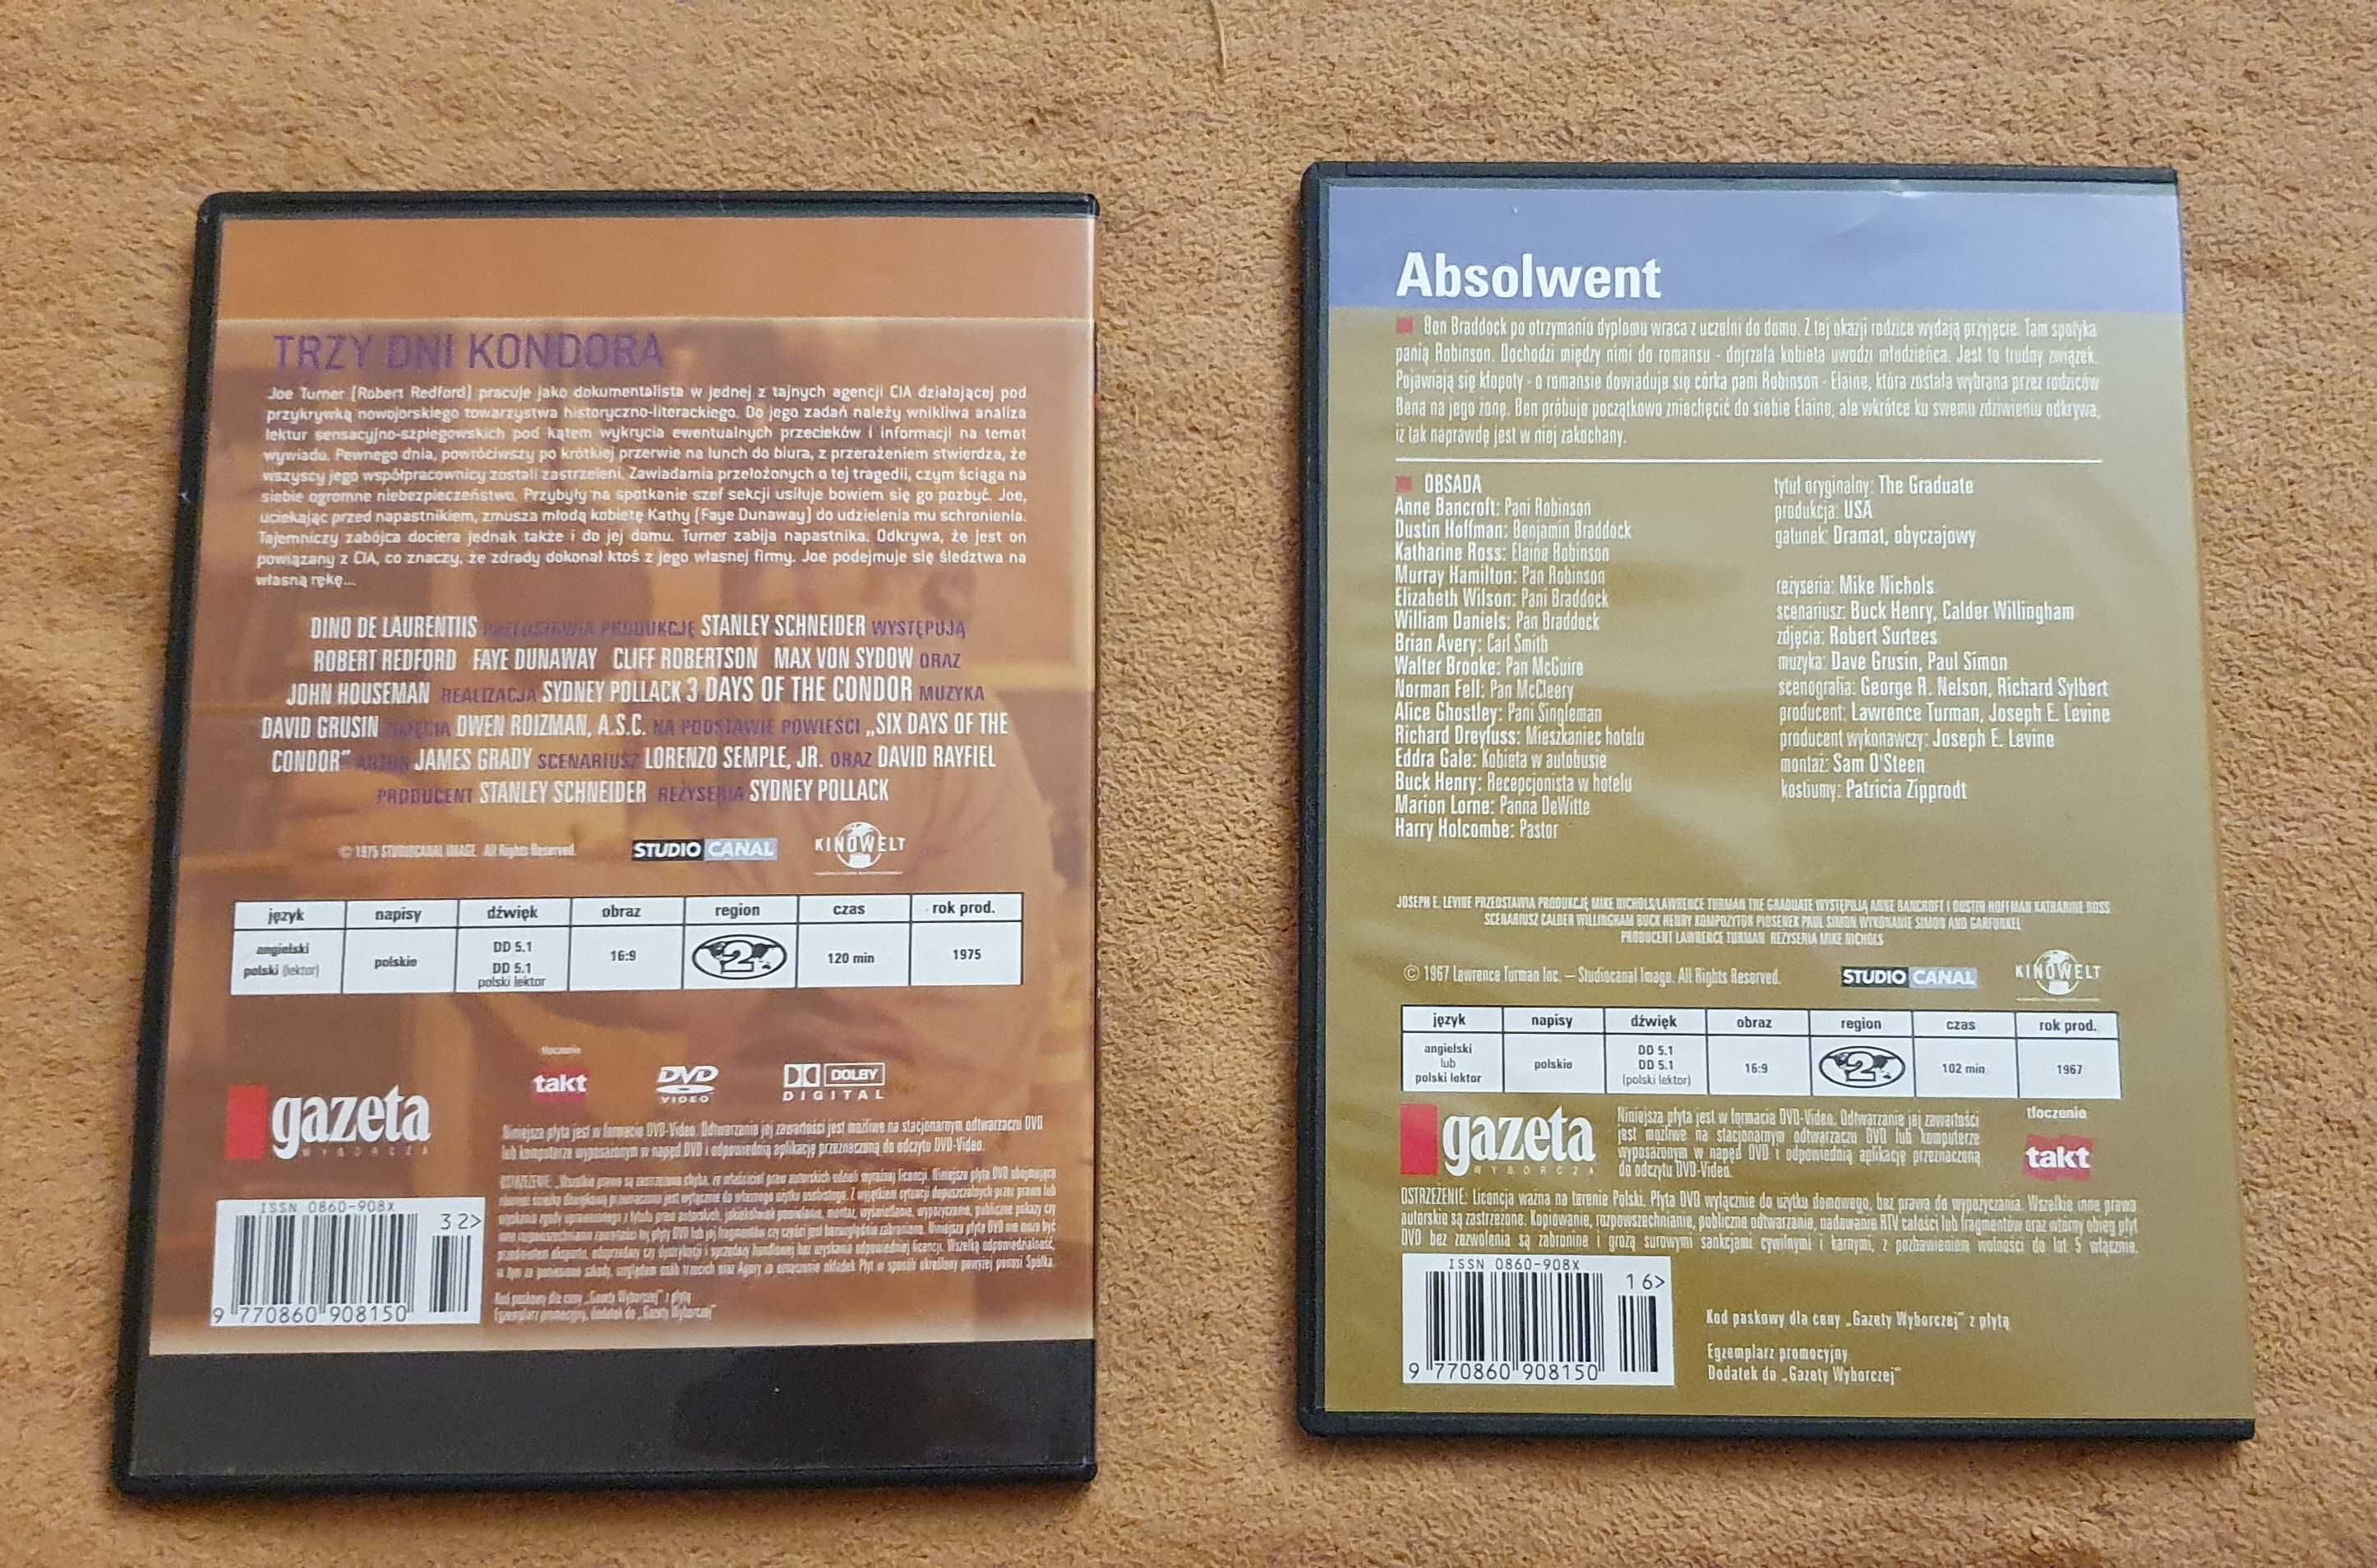 Zestaw 2 filmy DVD: "Trzy Dni Kondora" oraz "Absolwent"